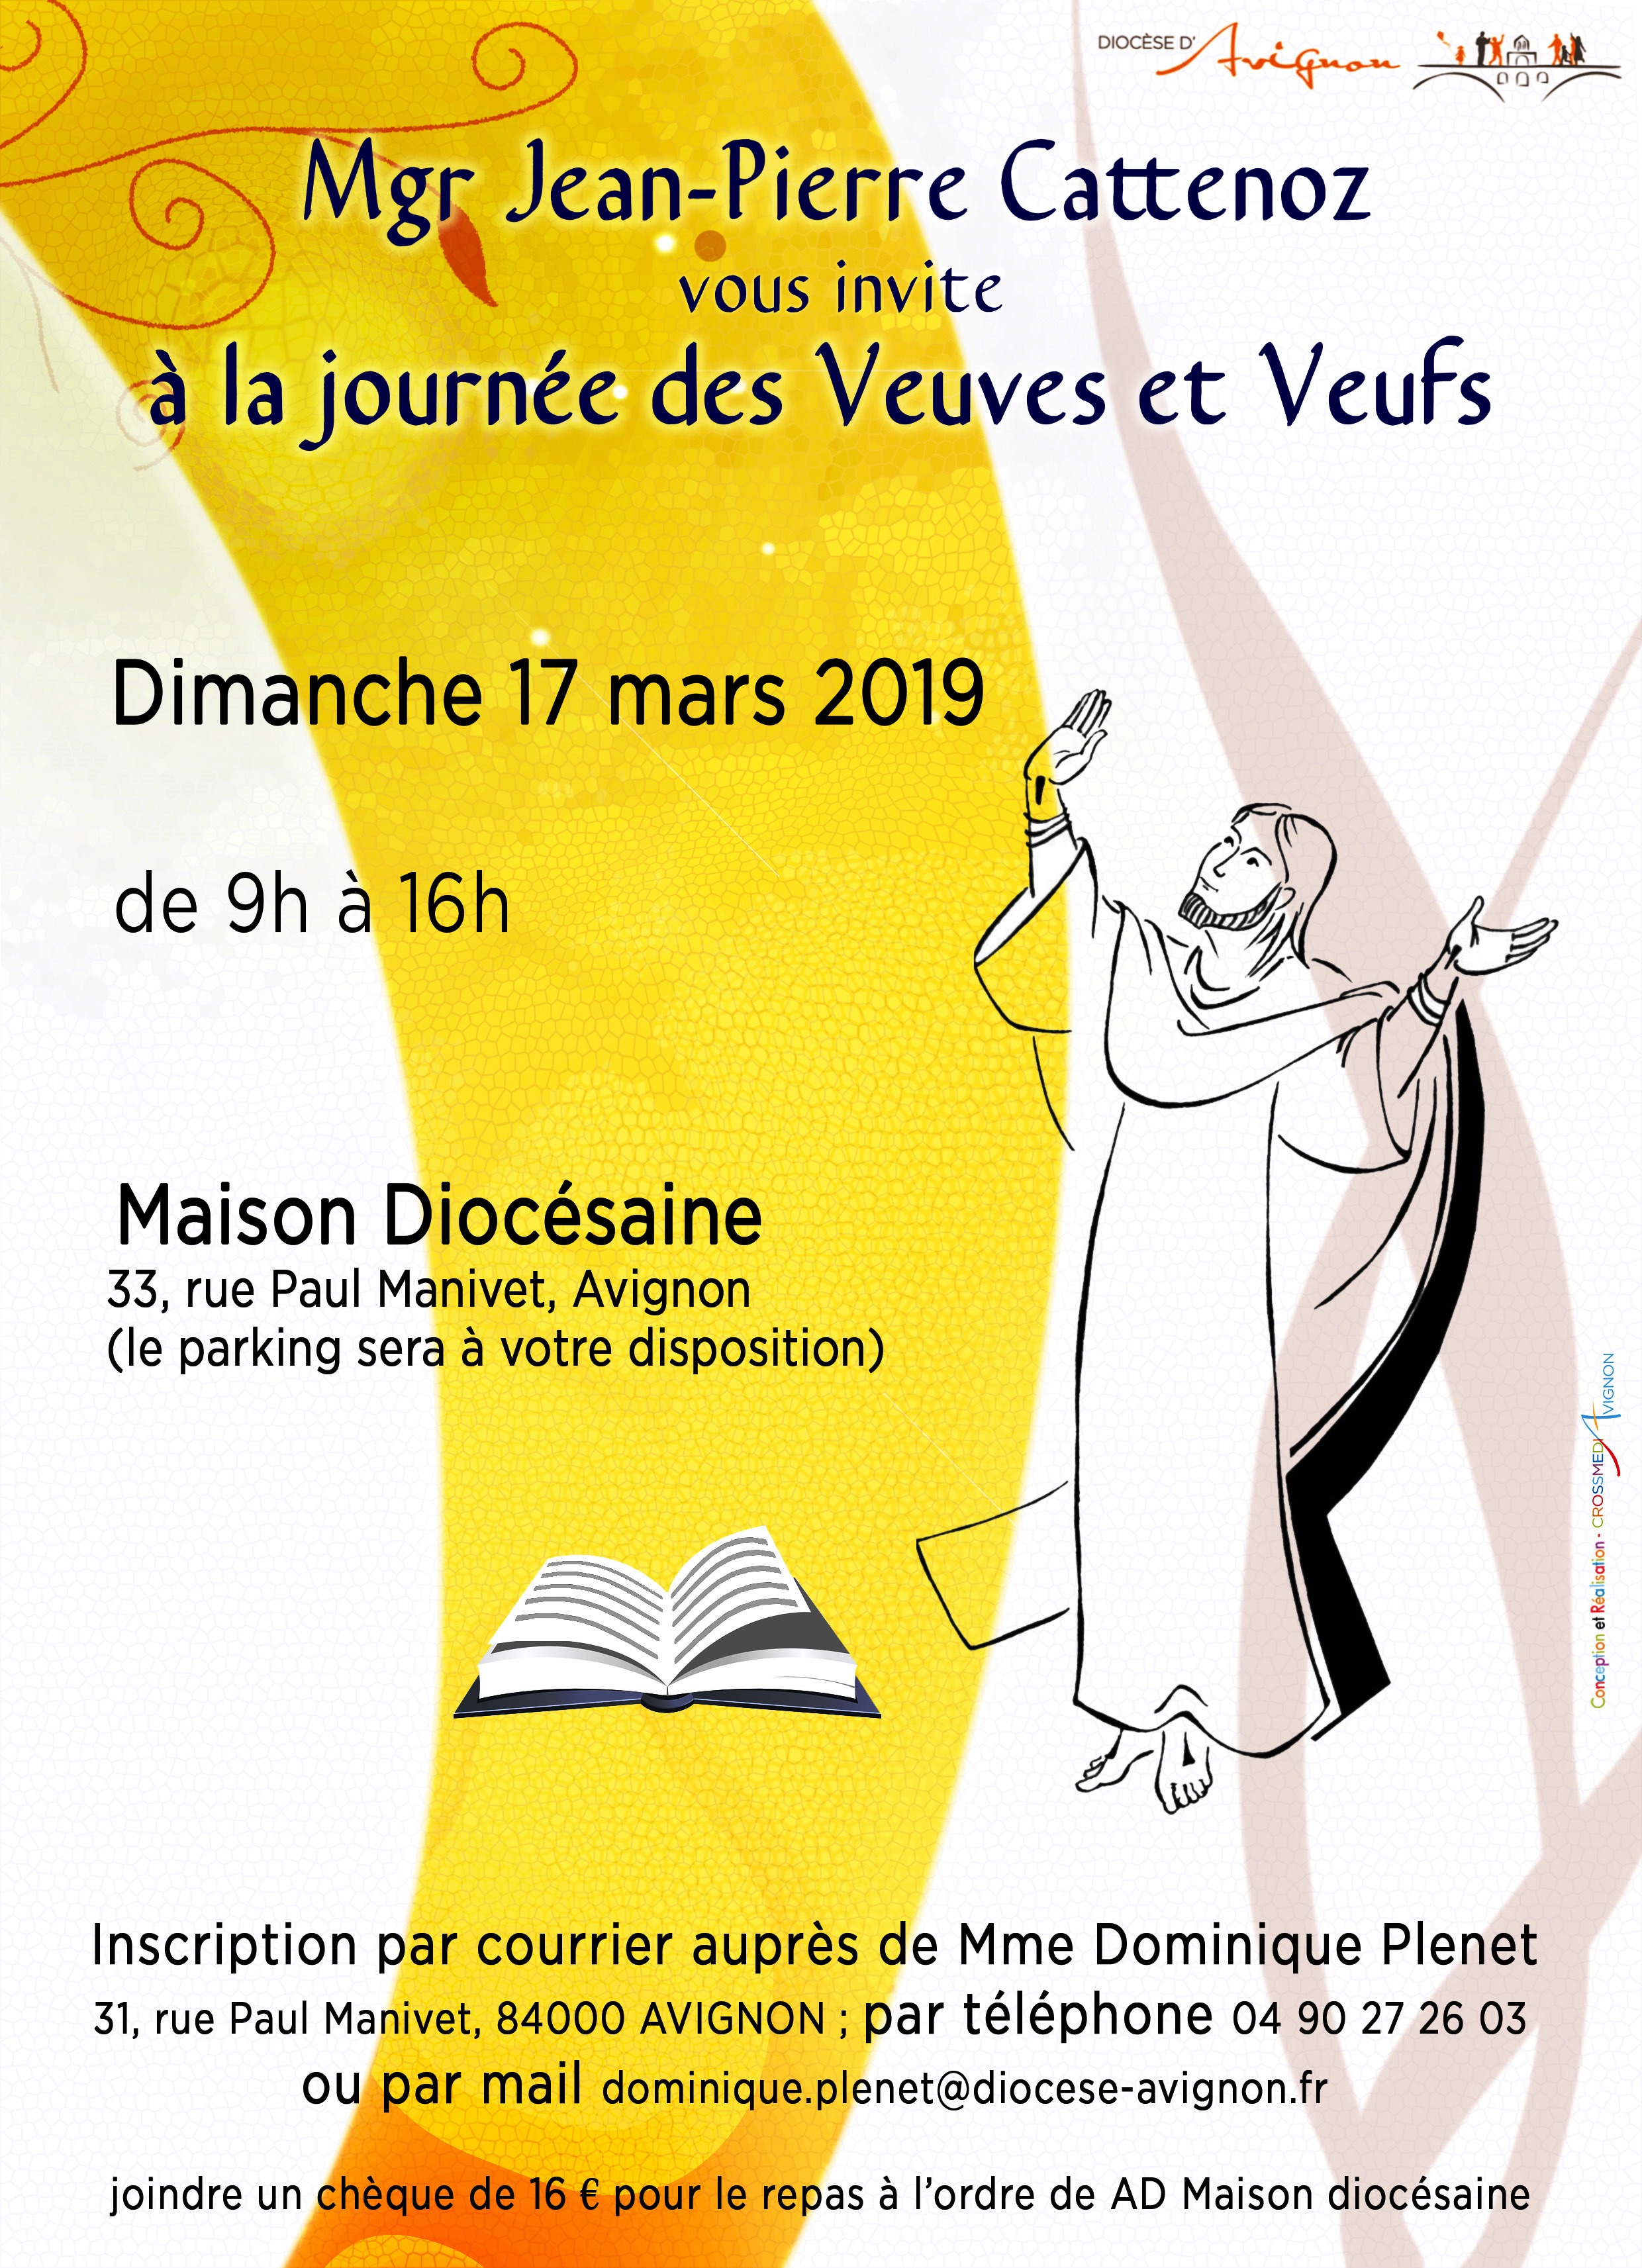 Journée des veuves et des veufs le 17 mars 2019 à Avignon (84)